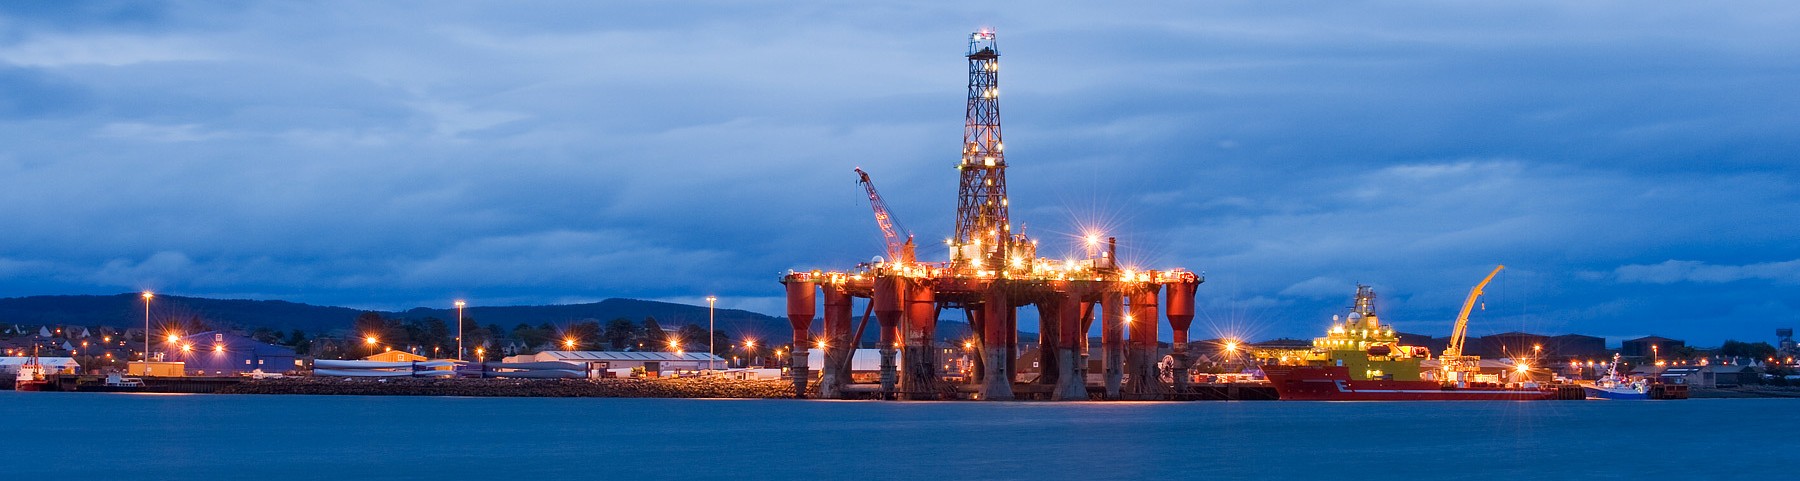 Oil_rigs_North_Sea_oil_Scotland_UK-e1404116581827